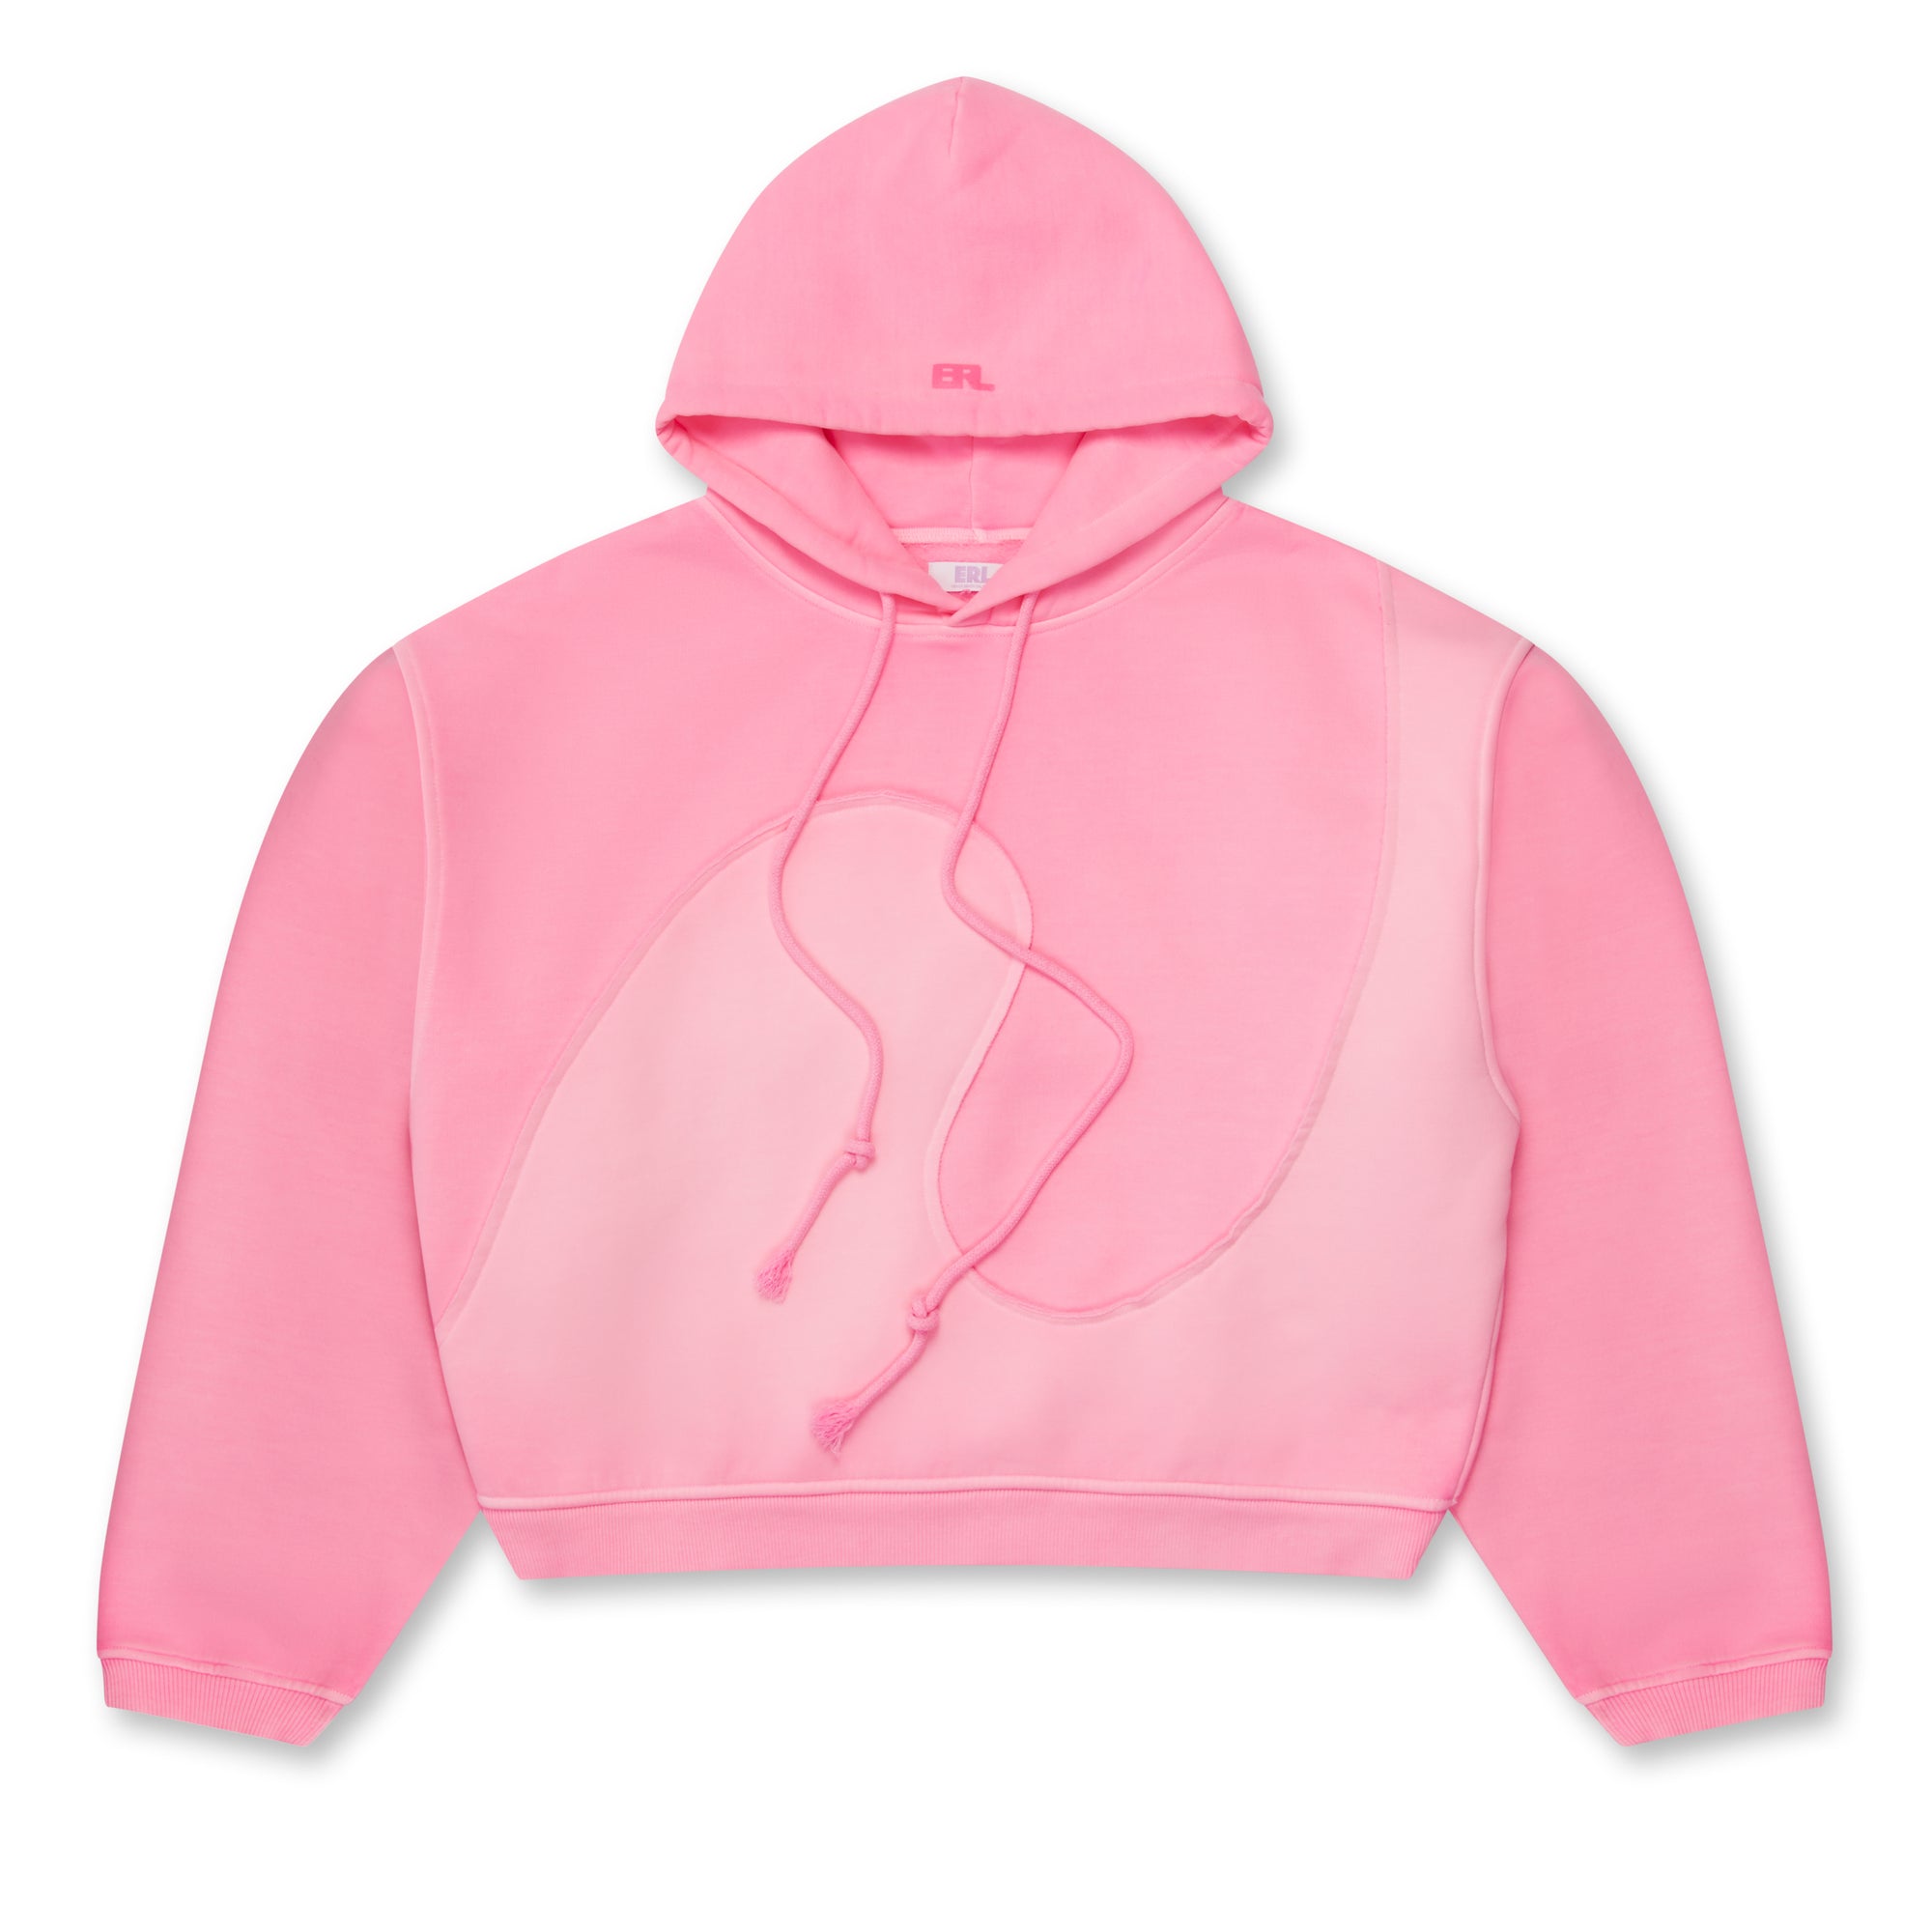 ERL - Swirl Fleece Hoodie Knit - (Pink) view 1